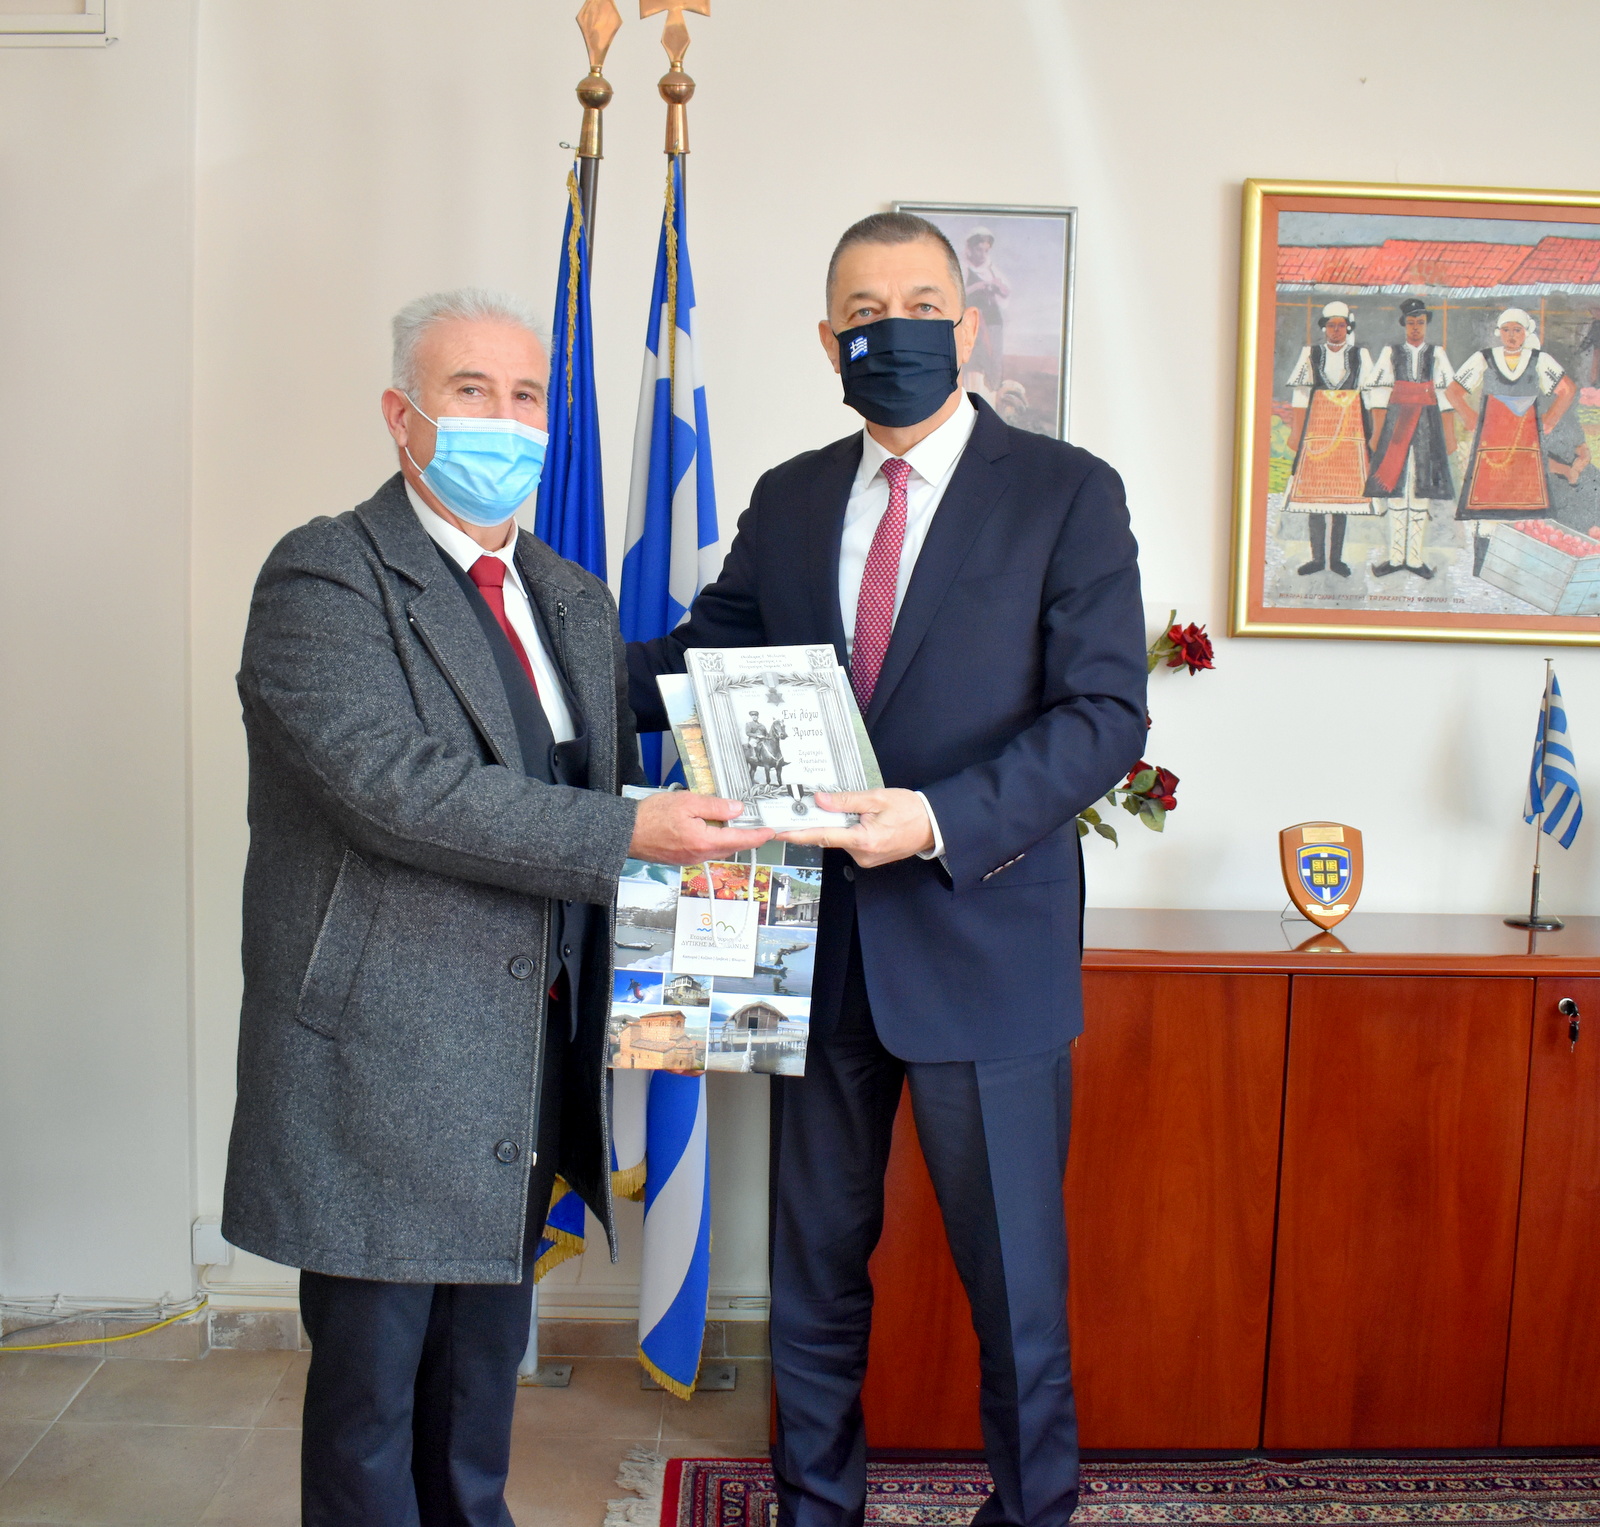 Συνάντηση του Αντιπεριφερειάρχη Φλώρινας με τον Υφυπουργό Εθνικής Αμύνης κ. Αλκιβιάδη Στεφανή